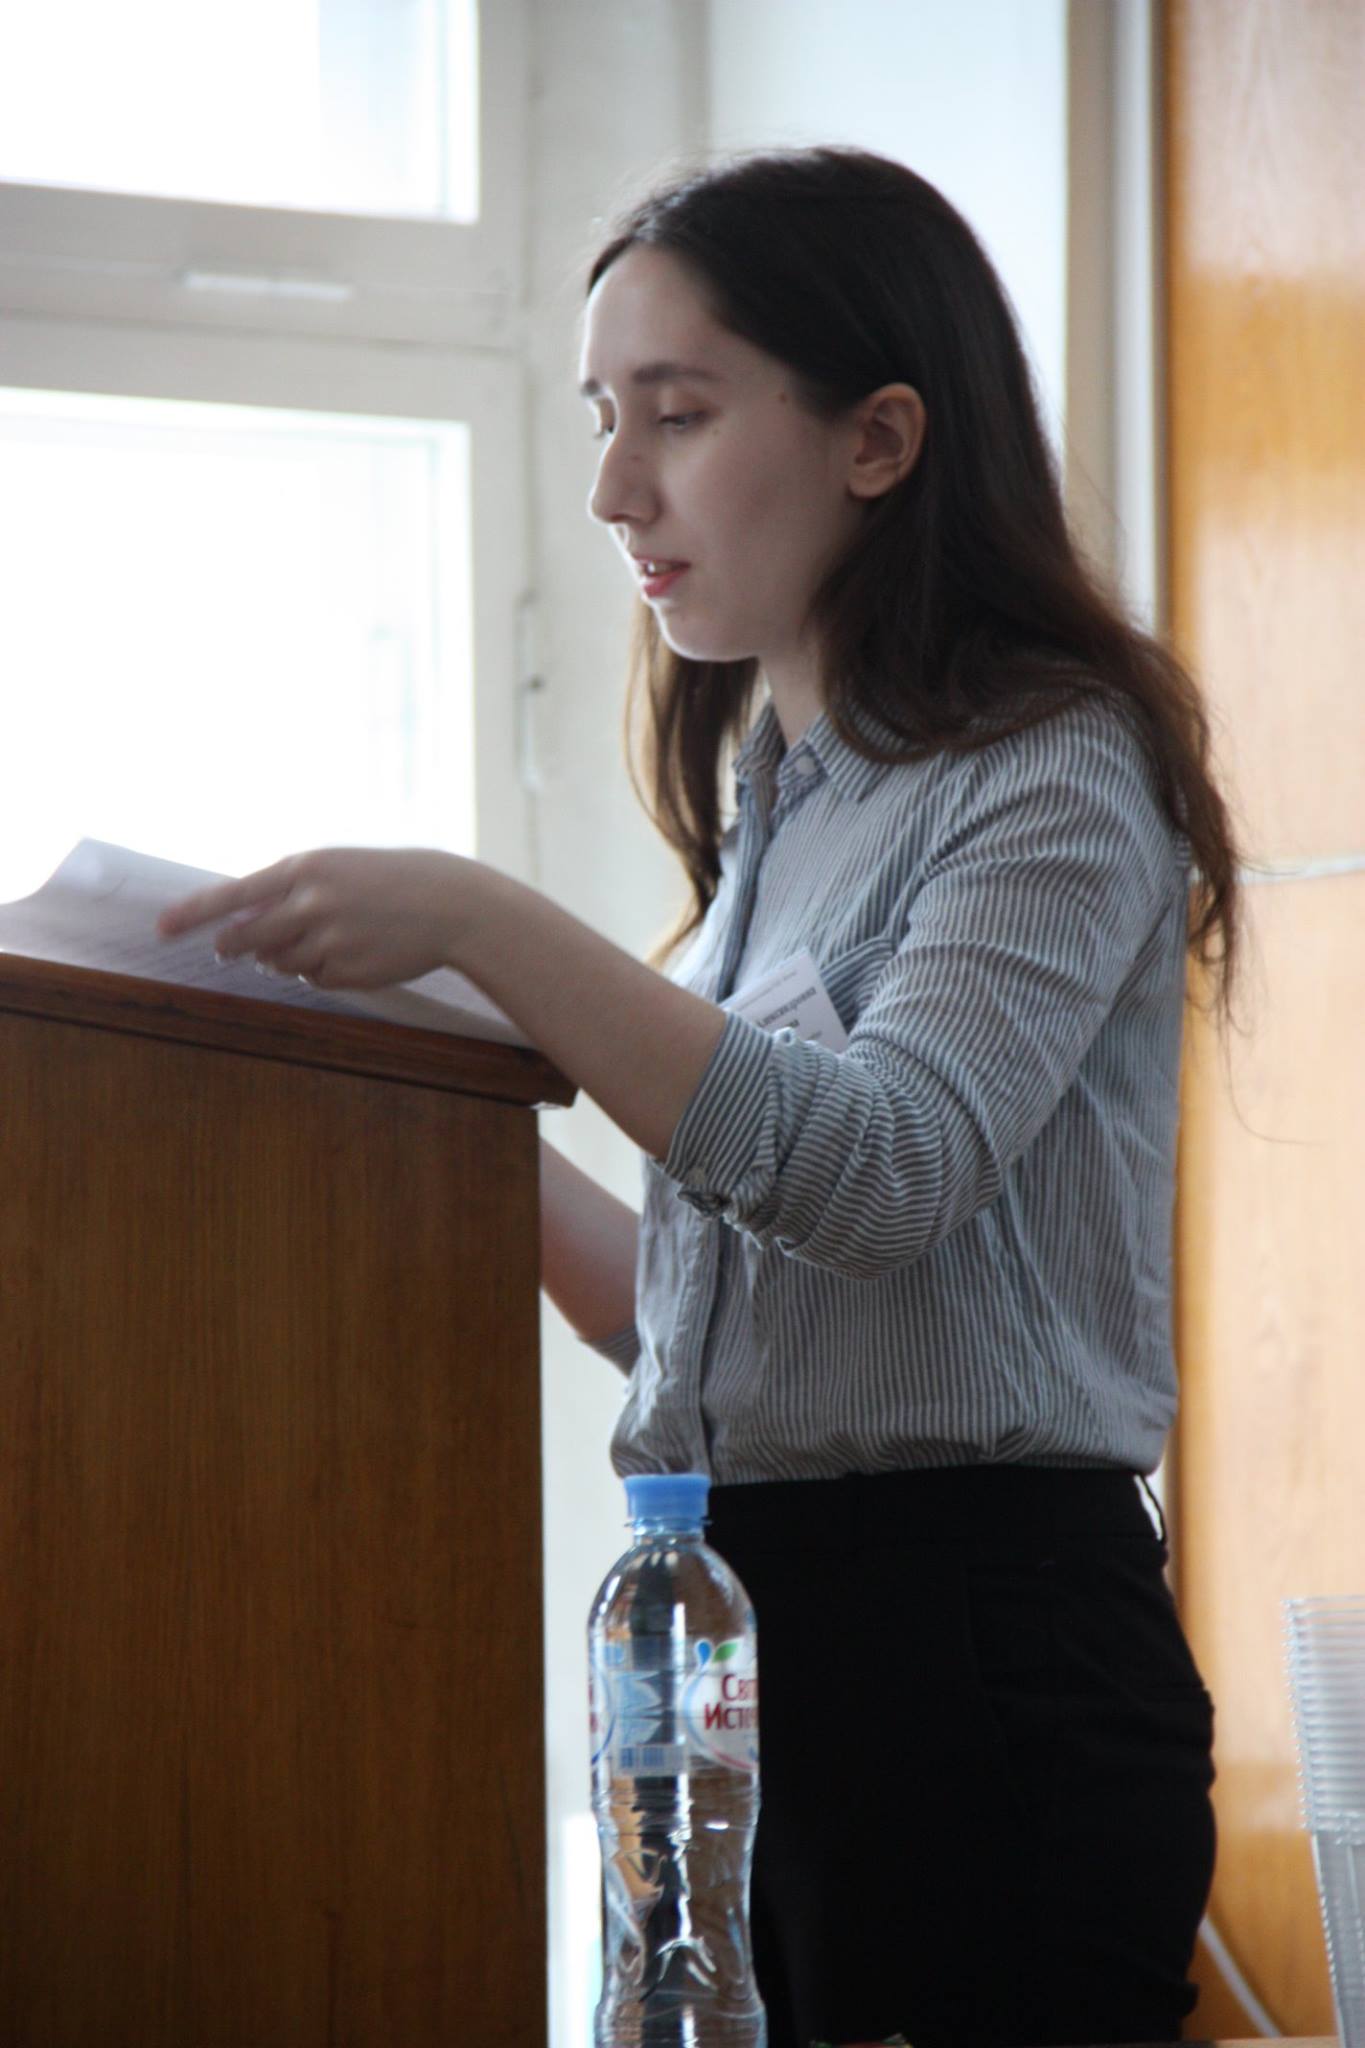 Д. А. Сапарова (ВШЭ СПб, Санкт-Петербург) с докладом «Согласование по числу прилагательных в удмуртском языке»